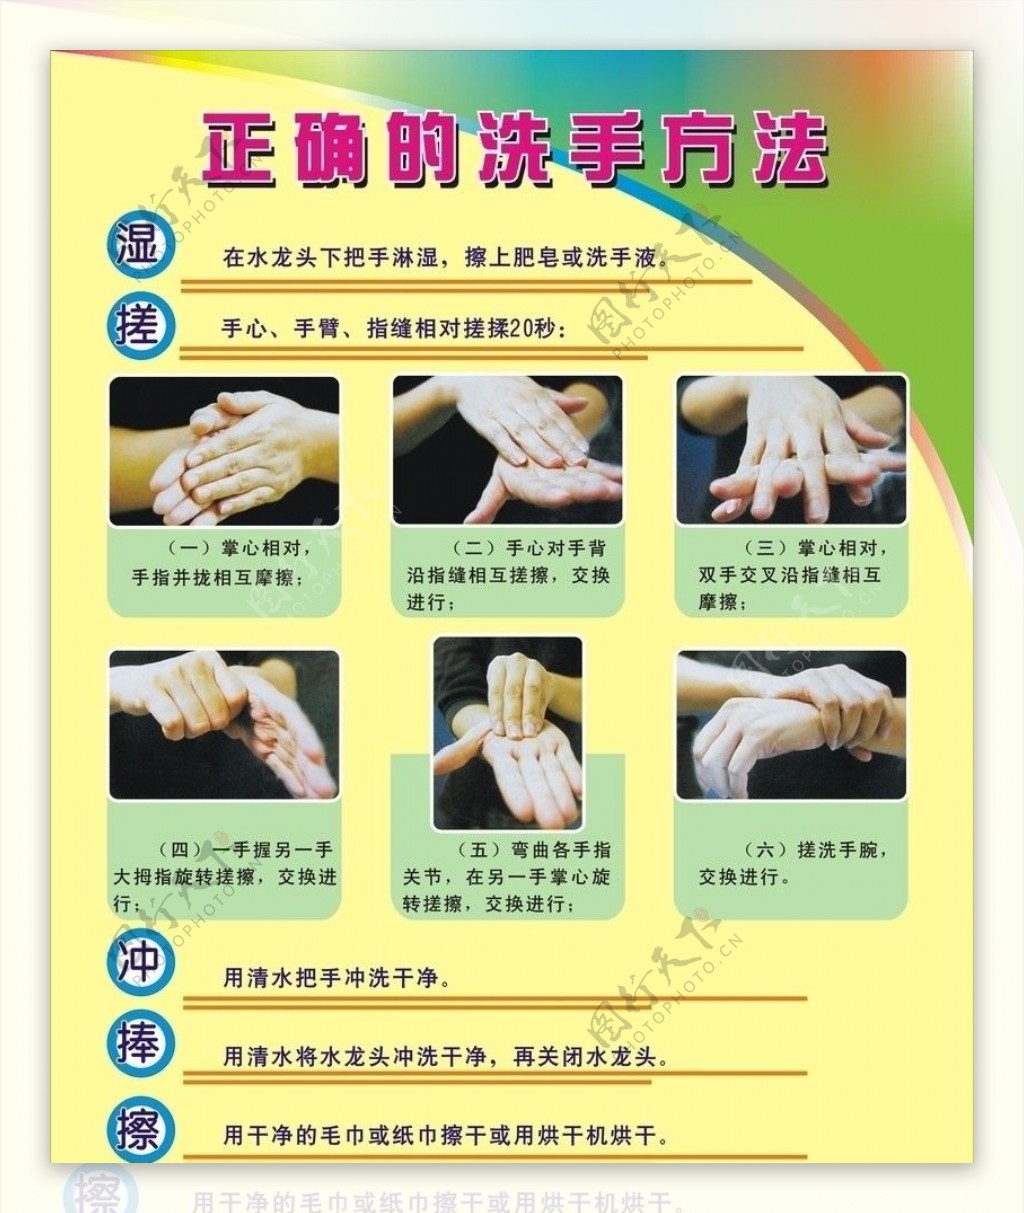 正确的洗手方法图片说明